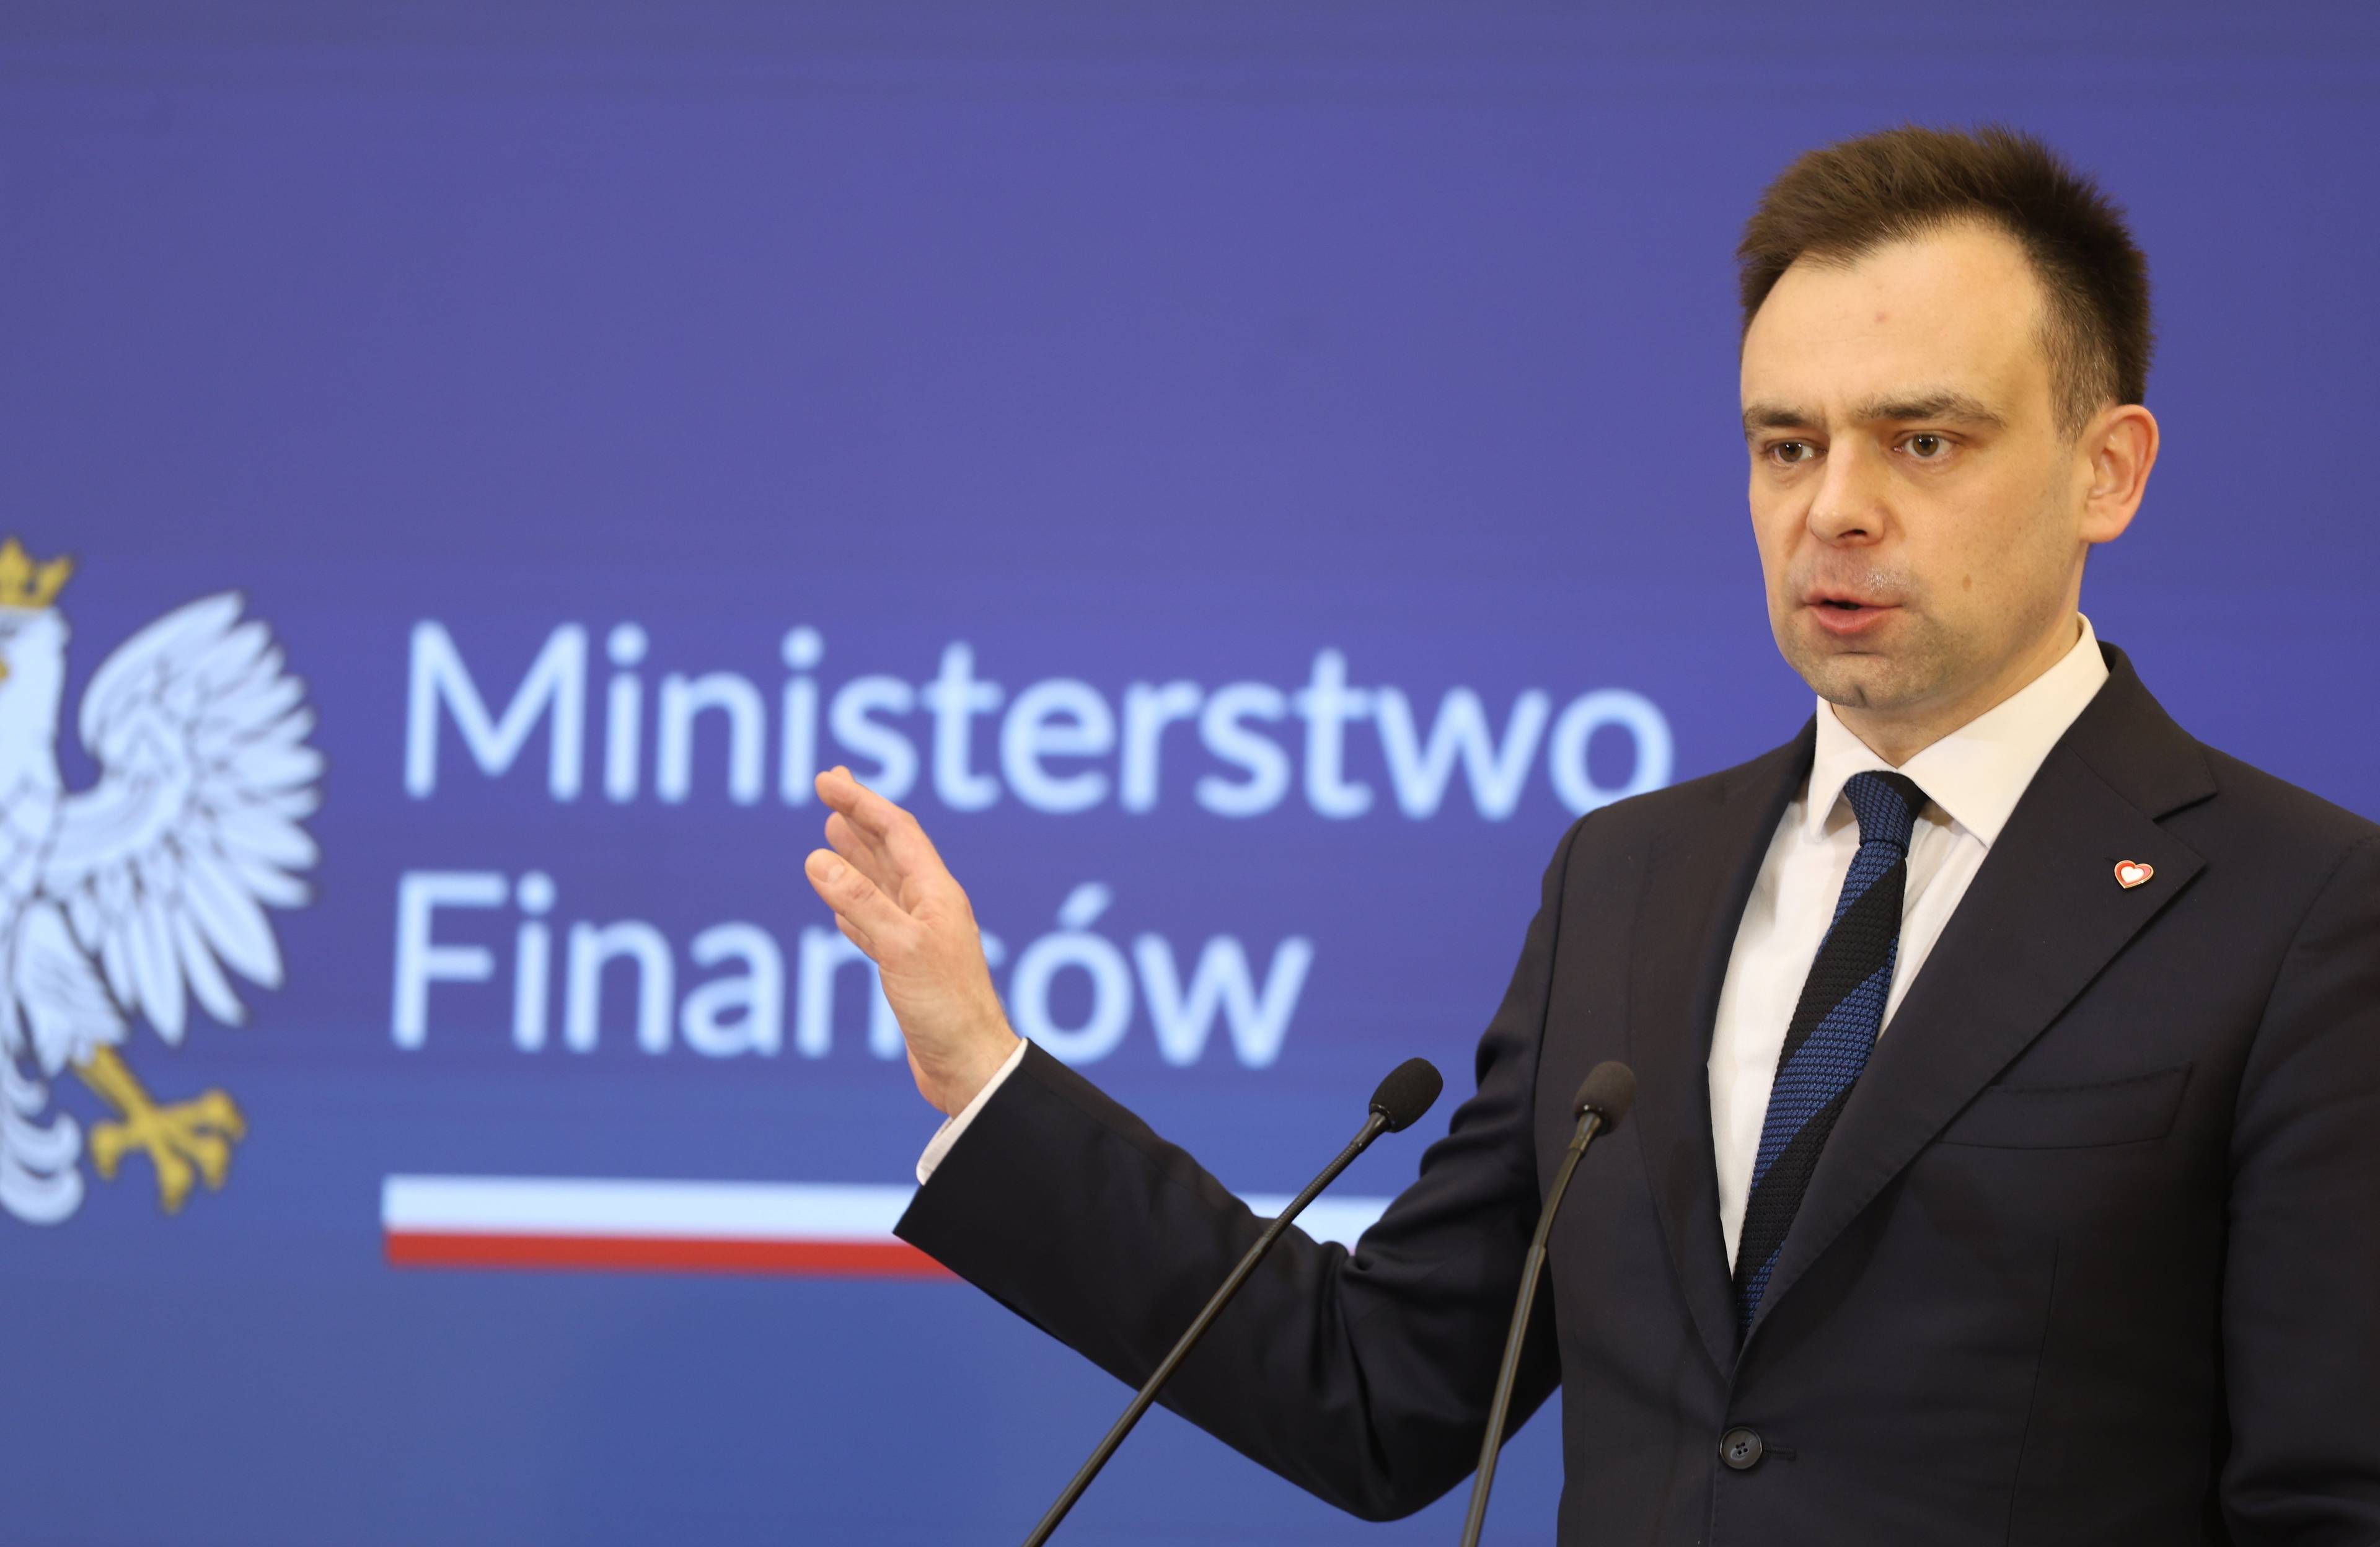 Andrzej Dońaski gestykuluje na tle napisu Ministerstwo Finansów